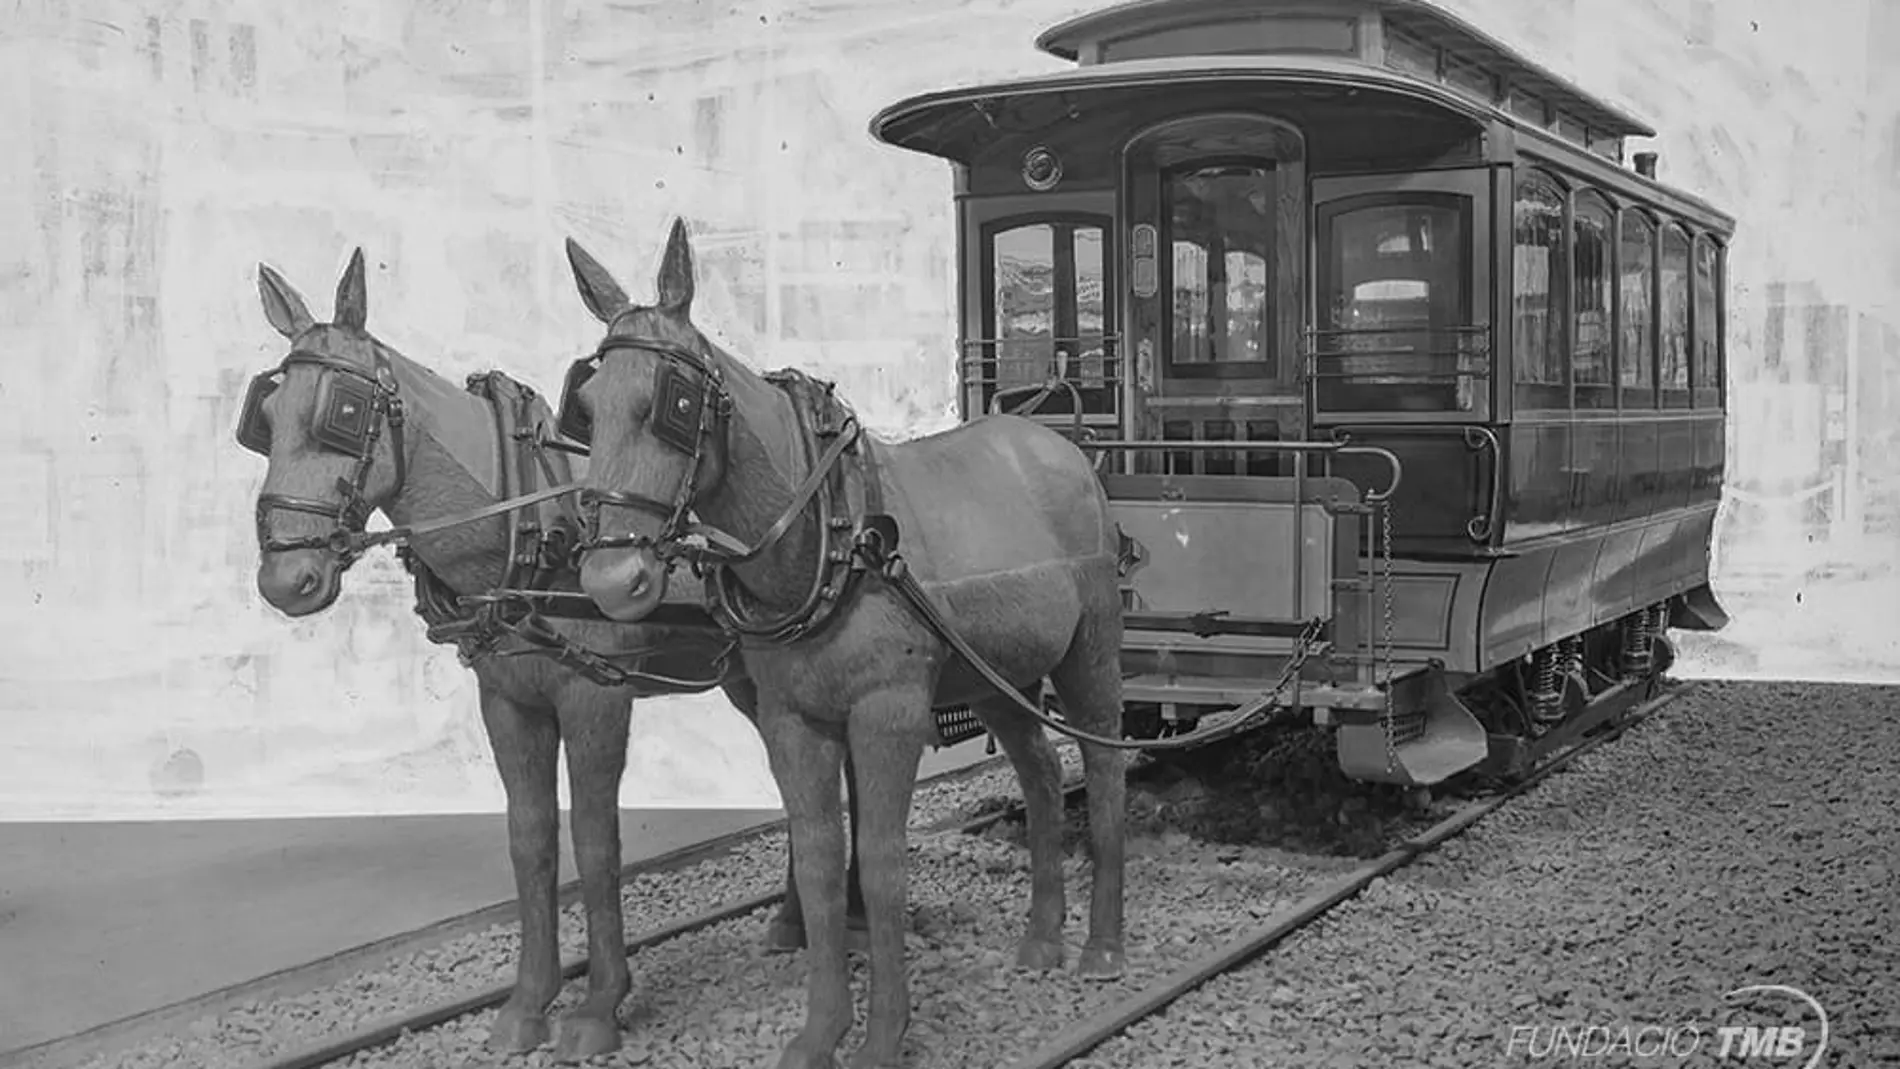 Imagen de un tranvía de tracción animal como los que inauguraron la primera línea de tranvías de Barcelona el 27 de junio de 1872. Eran tranvías tirados por mulas o caballos. La fotografía es de 1929, cuando el tranvía n.2 fue exhibido en la Exposición Internacional de Barcelona